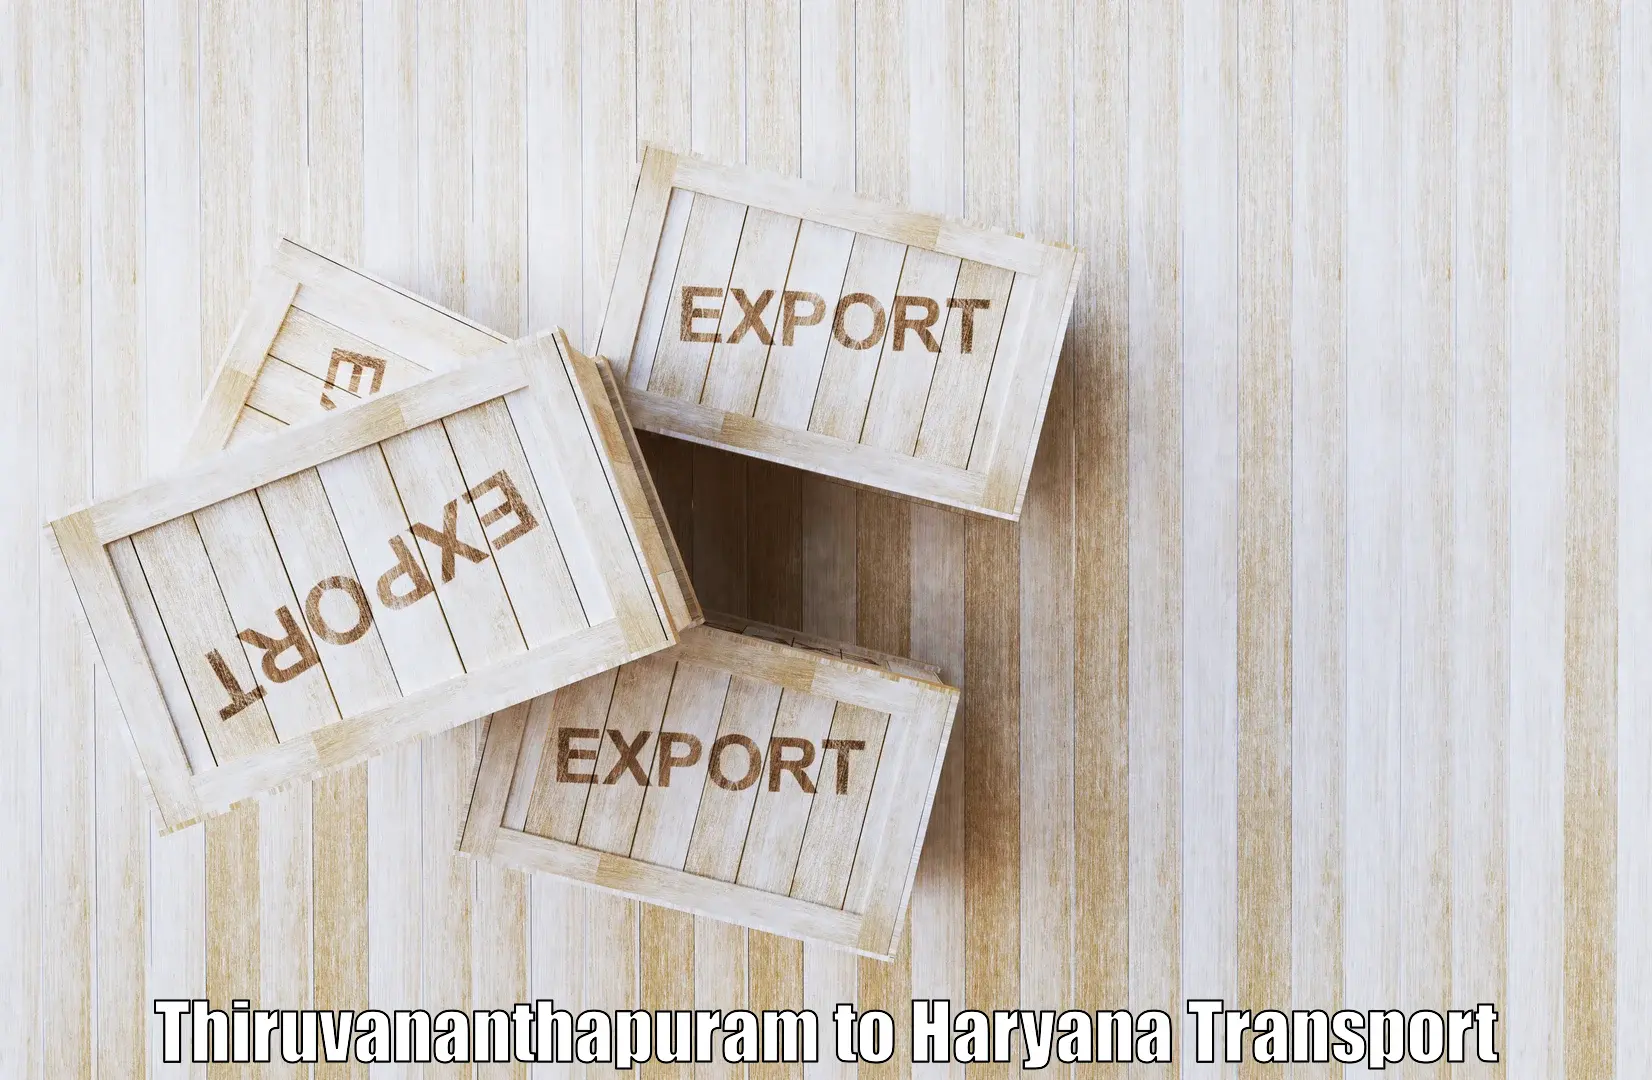 Best transport services in India Thiruvananthapuram to Assandh